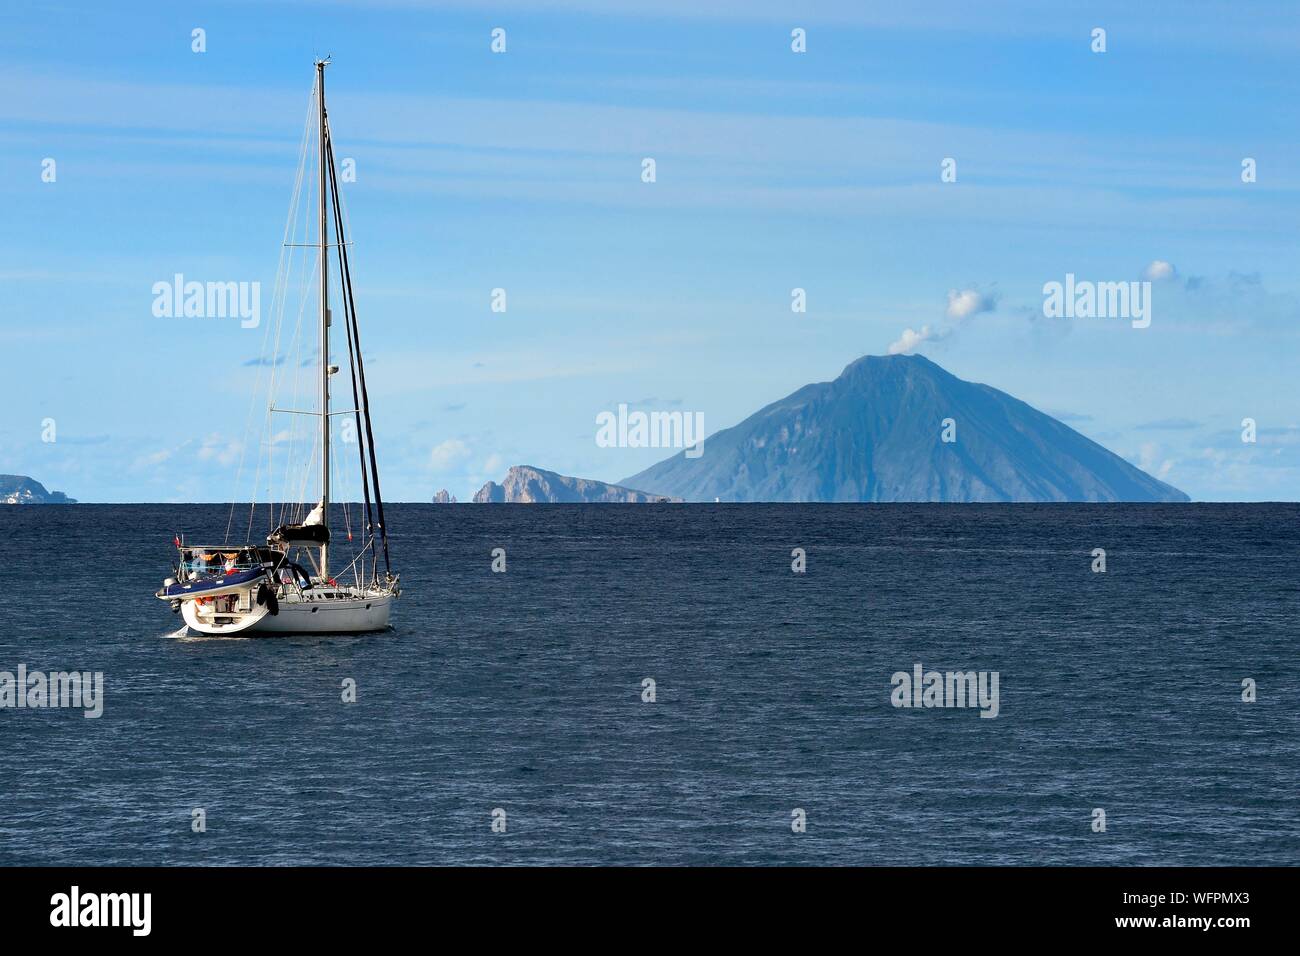 Italie, Sicile, Îles Éoliennes, inscrite au Patrimoine Mondial de l'UNESCO, ferry reliant les îles, voilier naviguant à l''île de Panarea dans le centre et le volcan Stromboli dans l'arrière-plan Banque D'Images